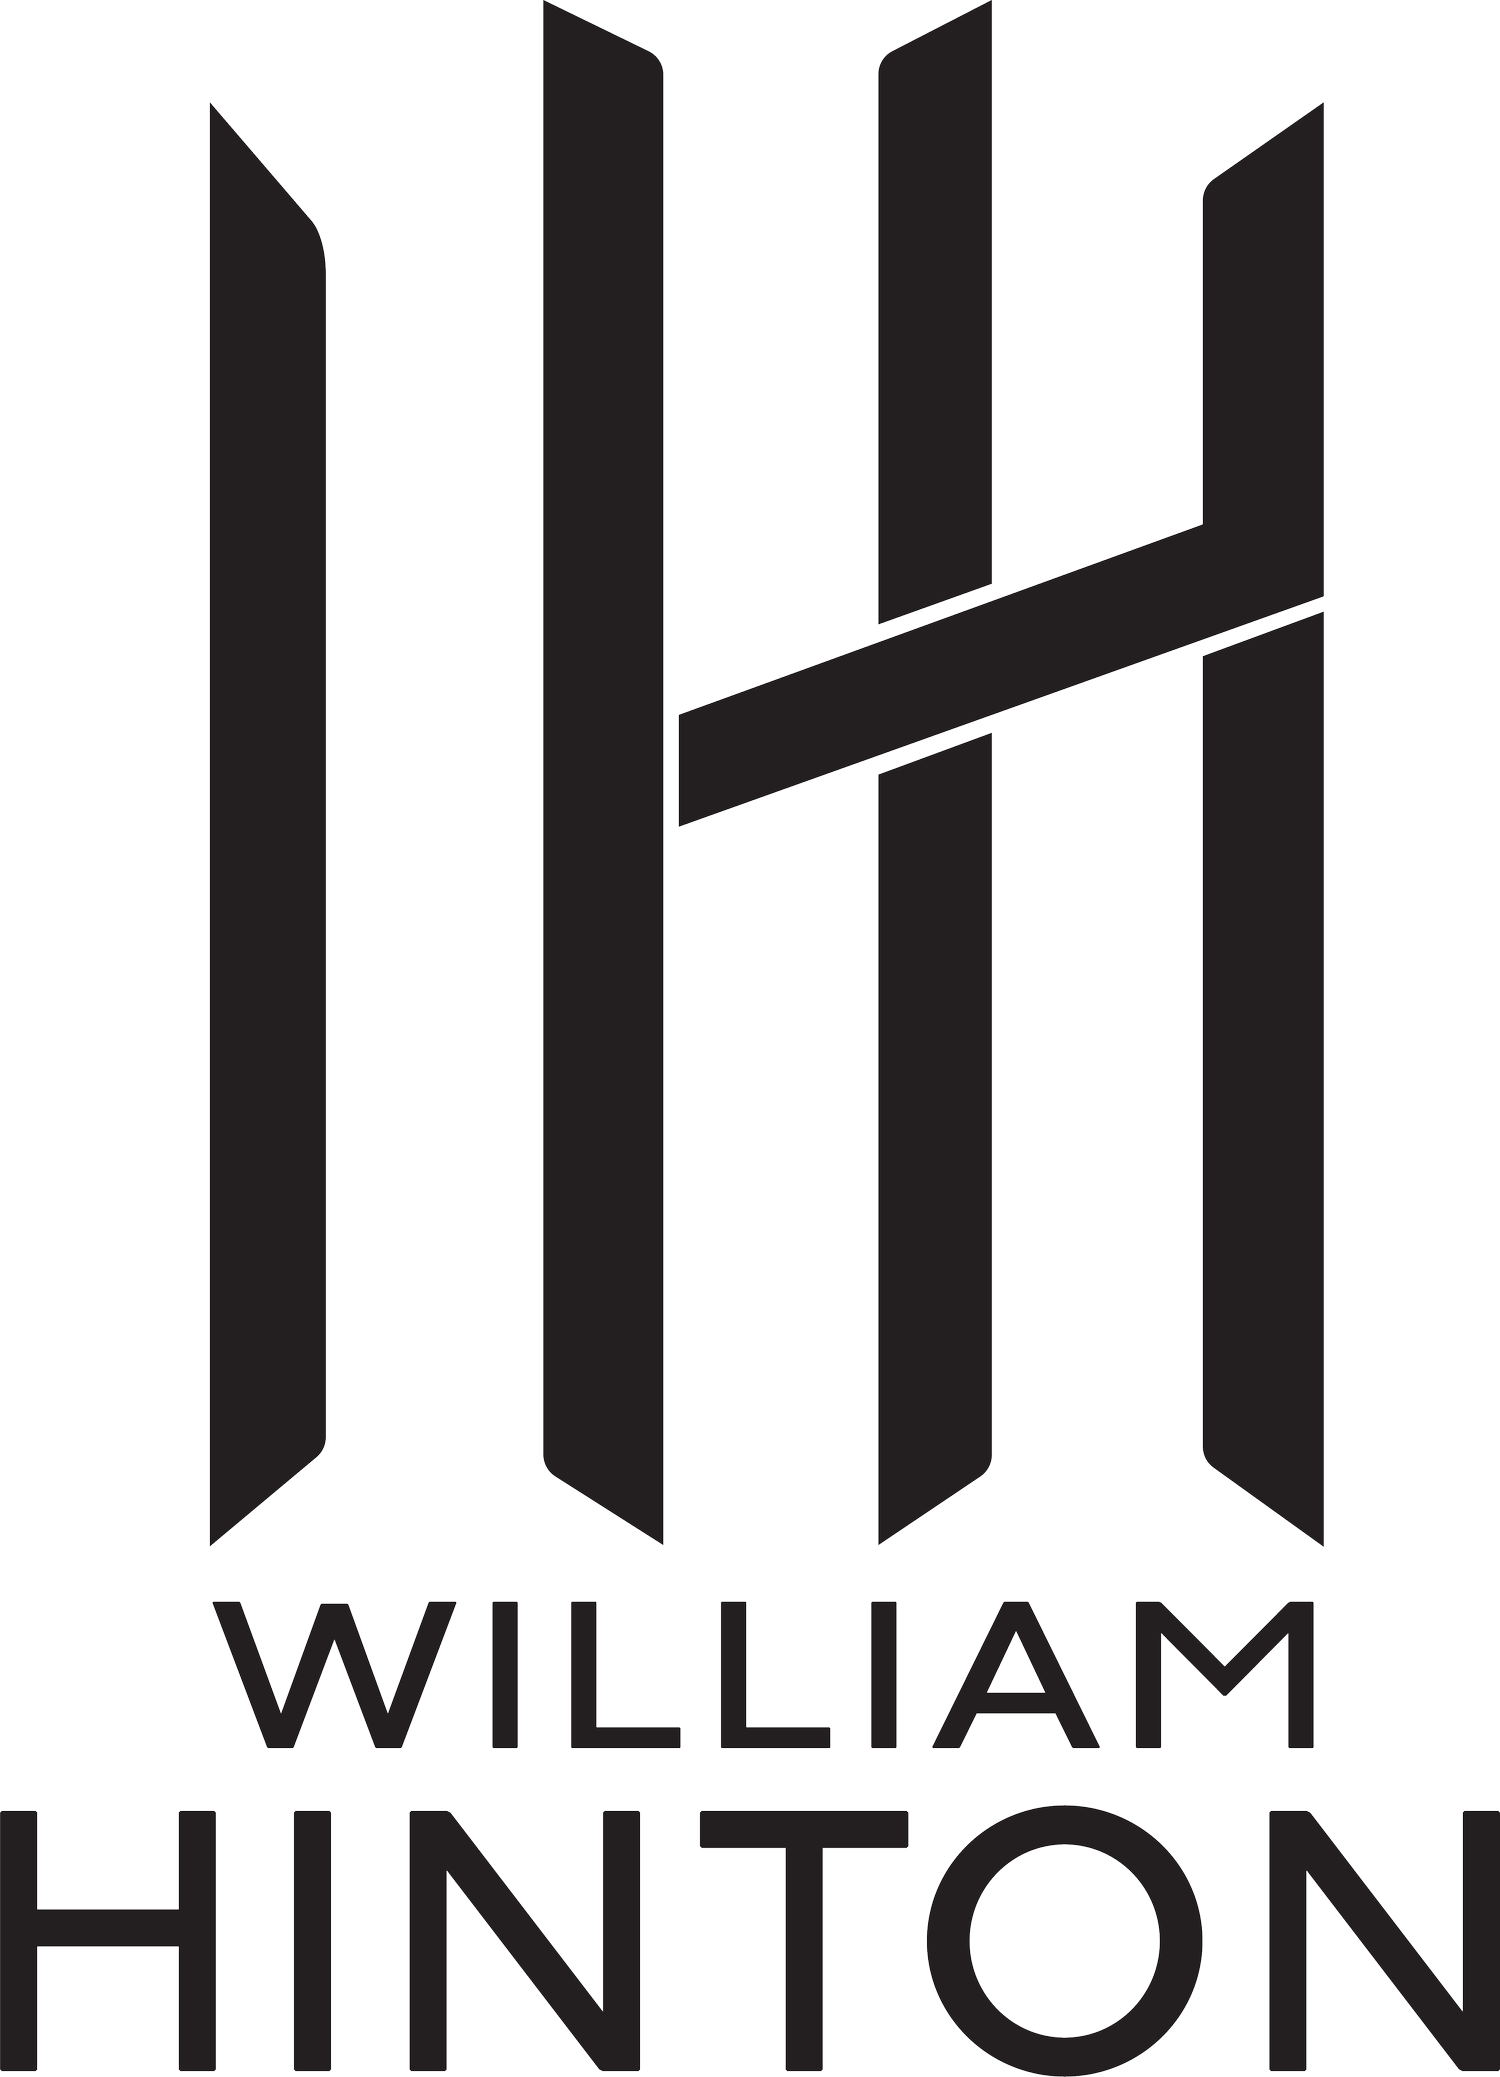 William Hinton Studios